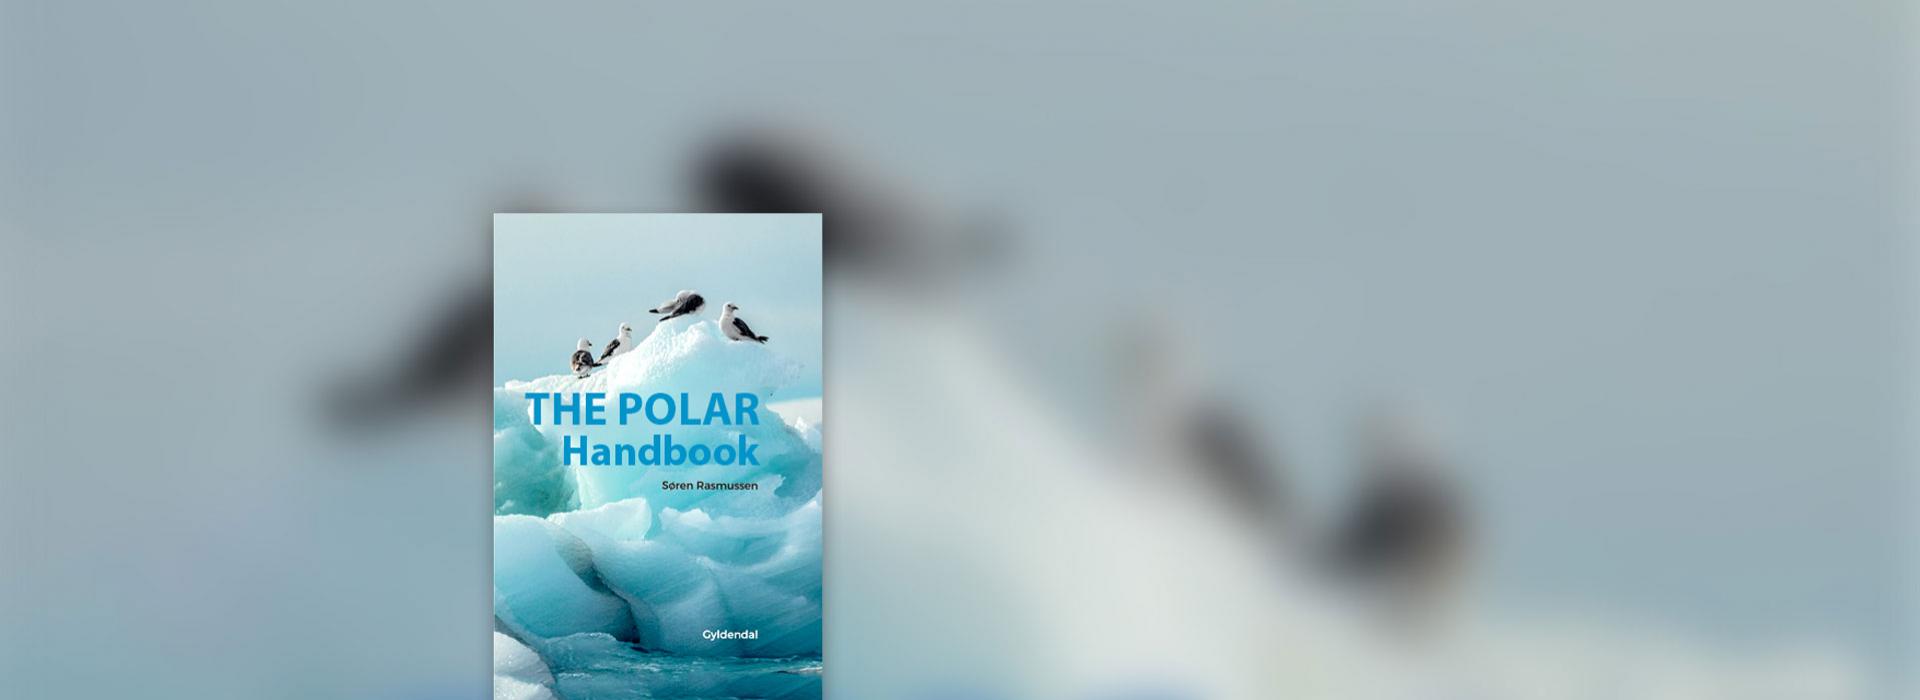 The Polar Handbook